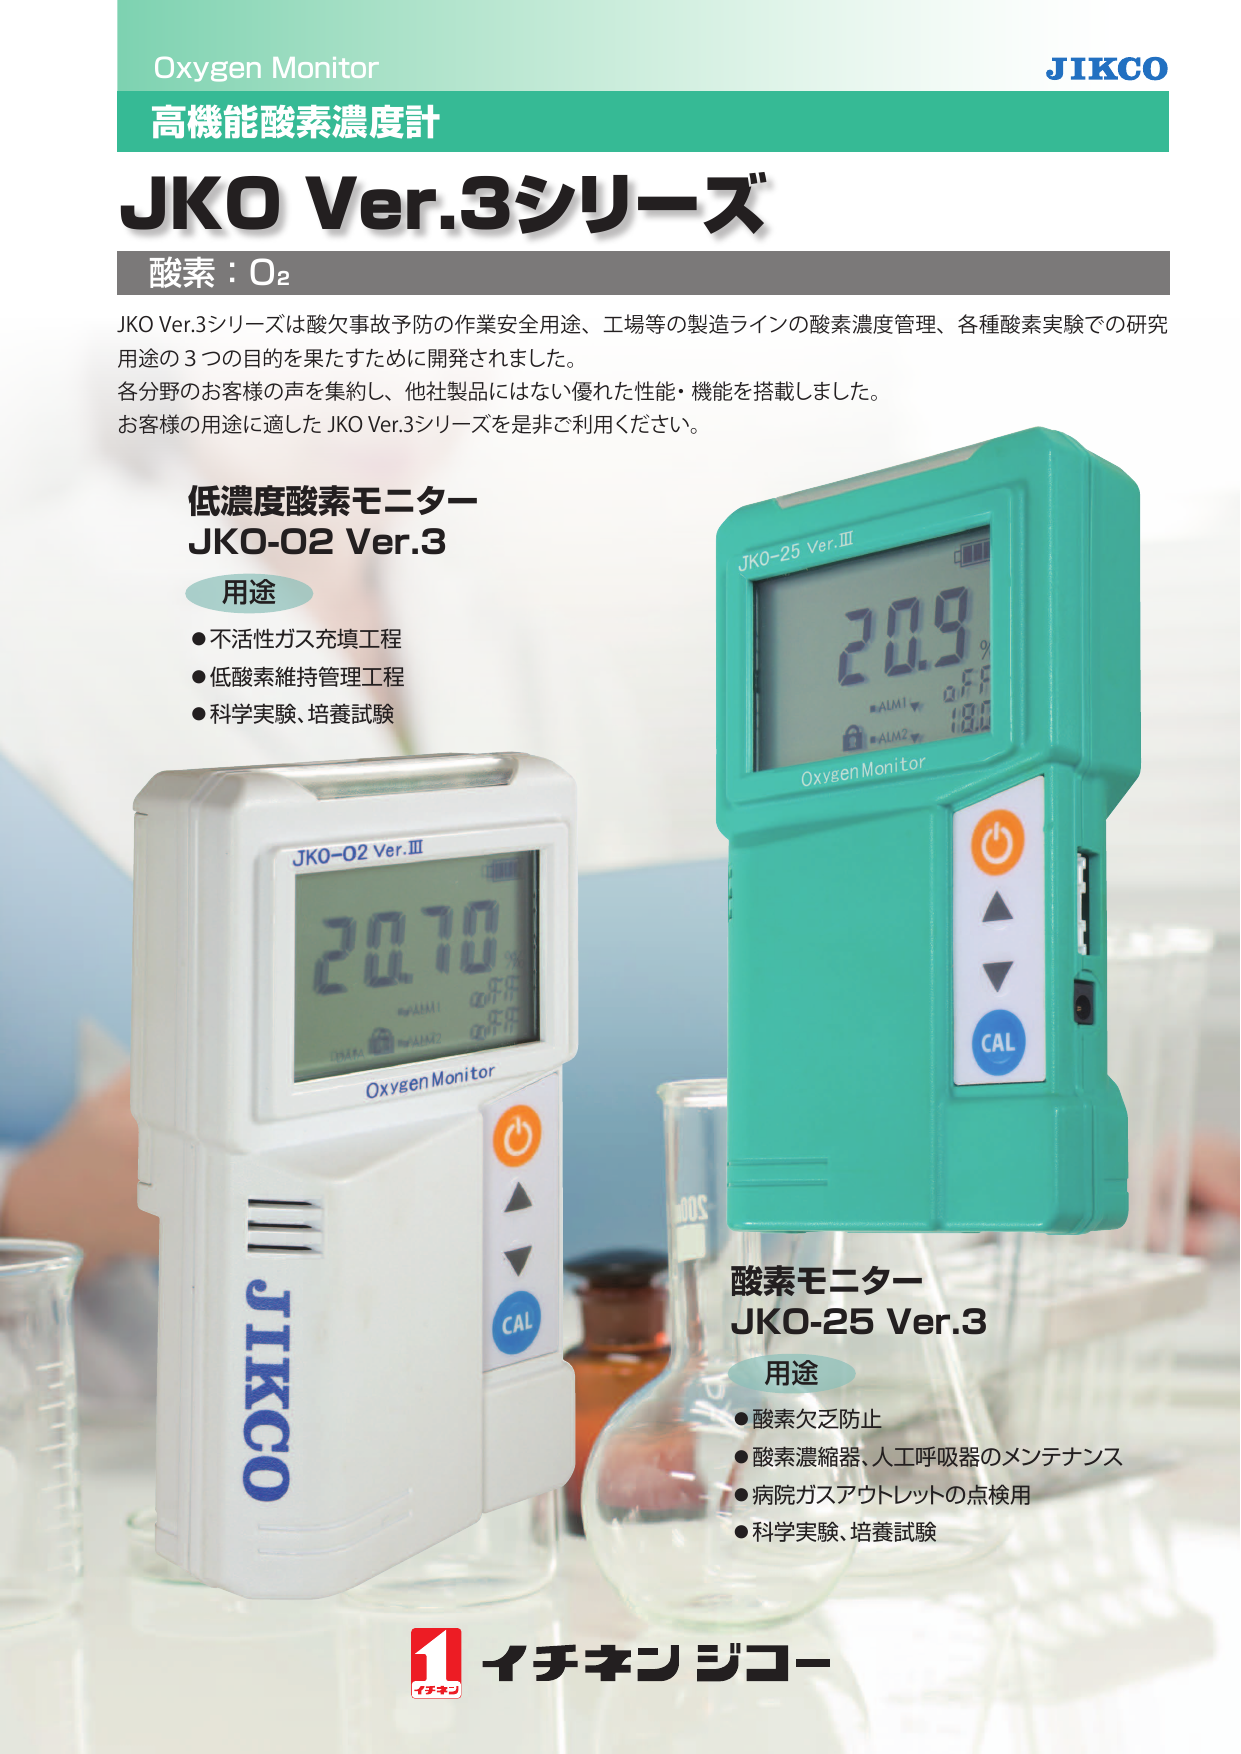 高機能酸素濃度計 JKO Ver.3シリーズ（株式会社イチネンジコー）の